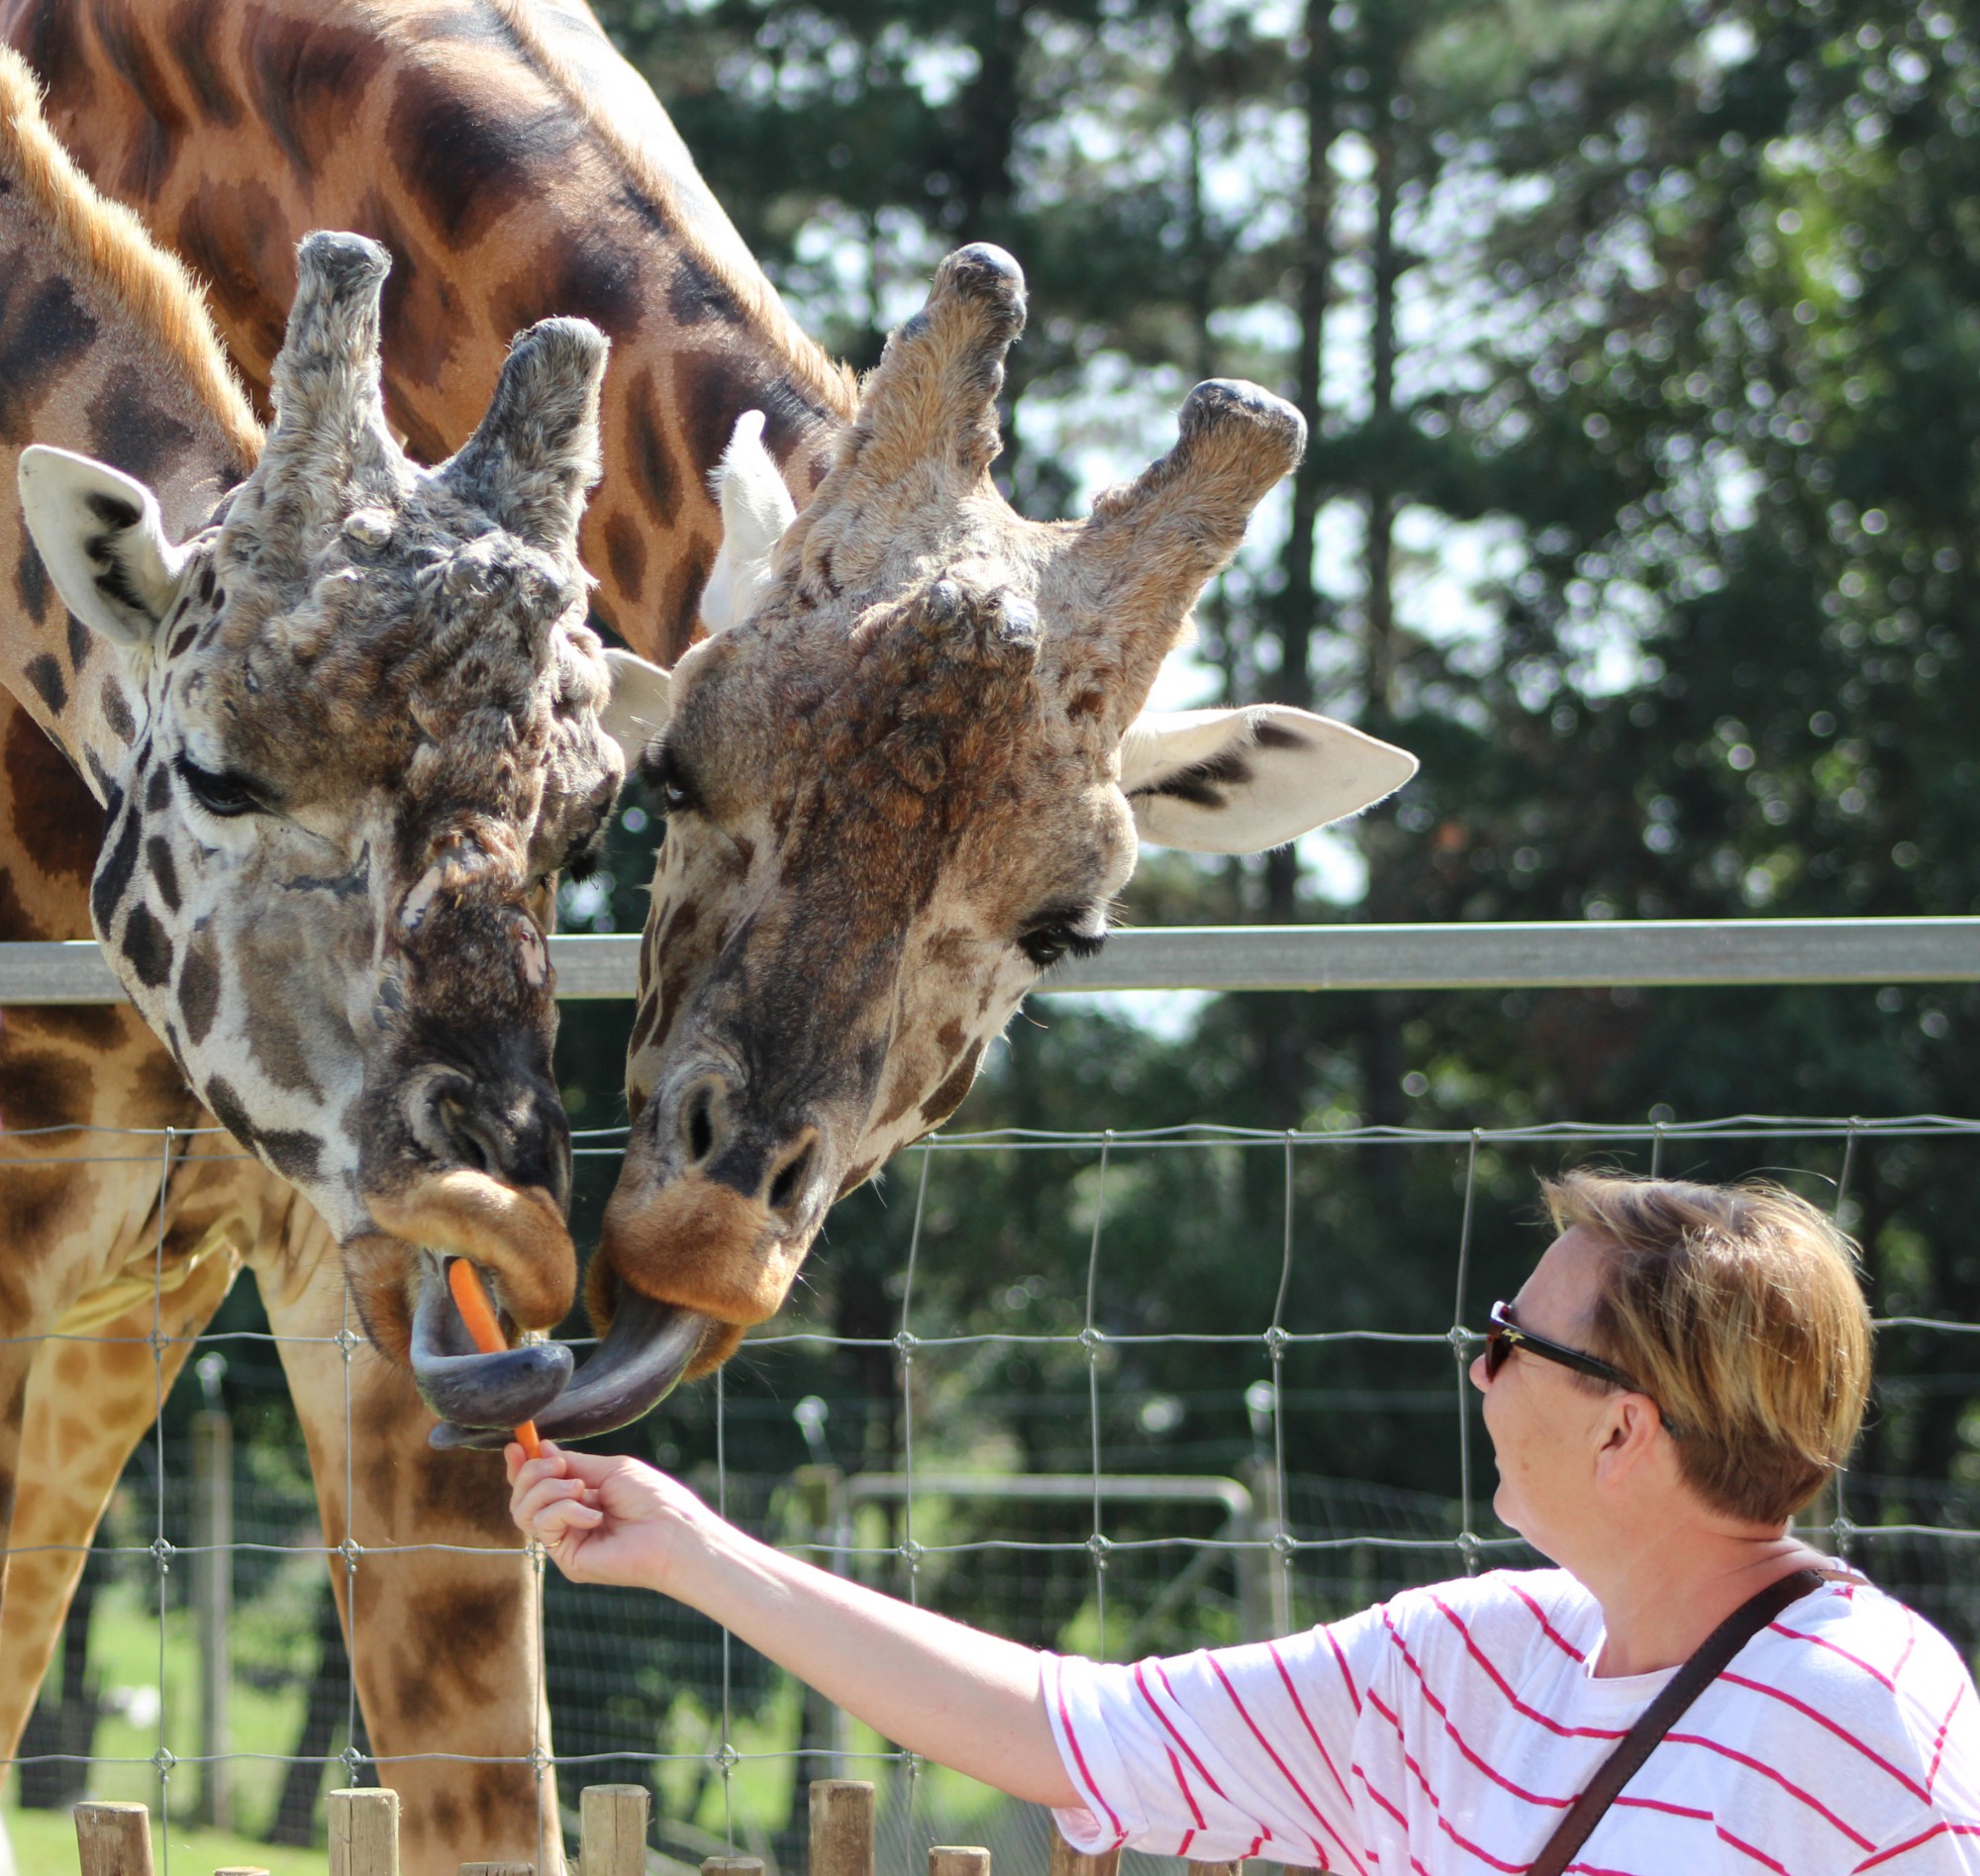 Feeding giraffe2